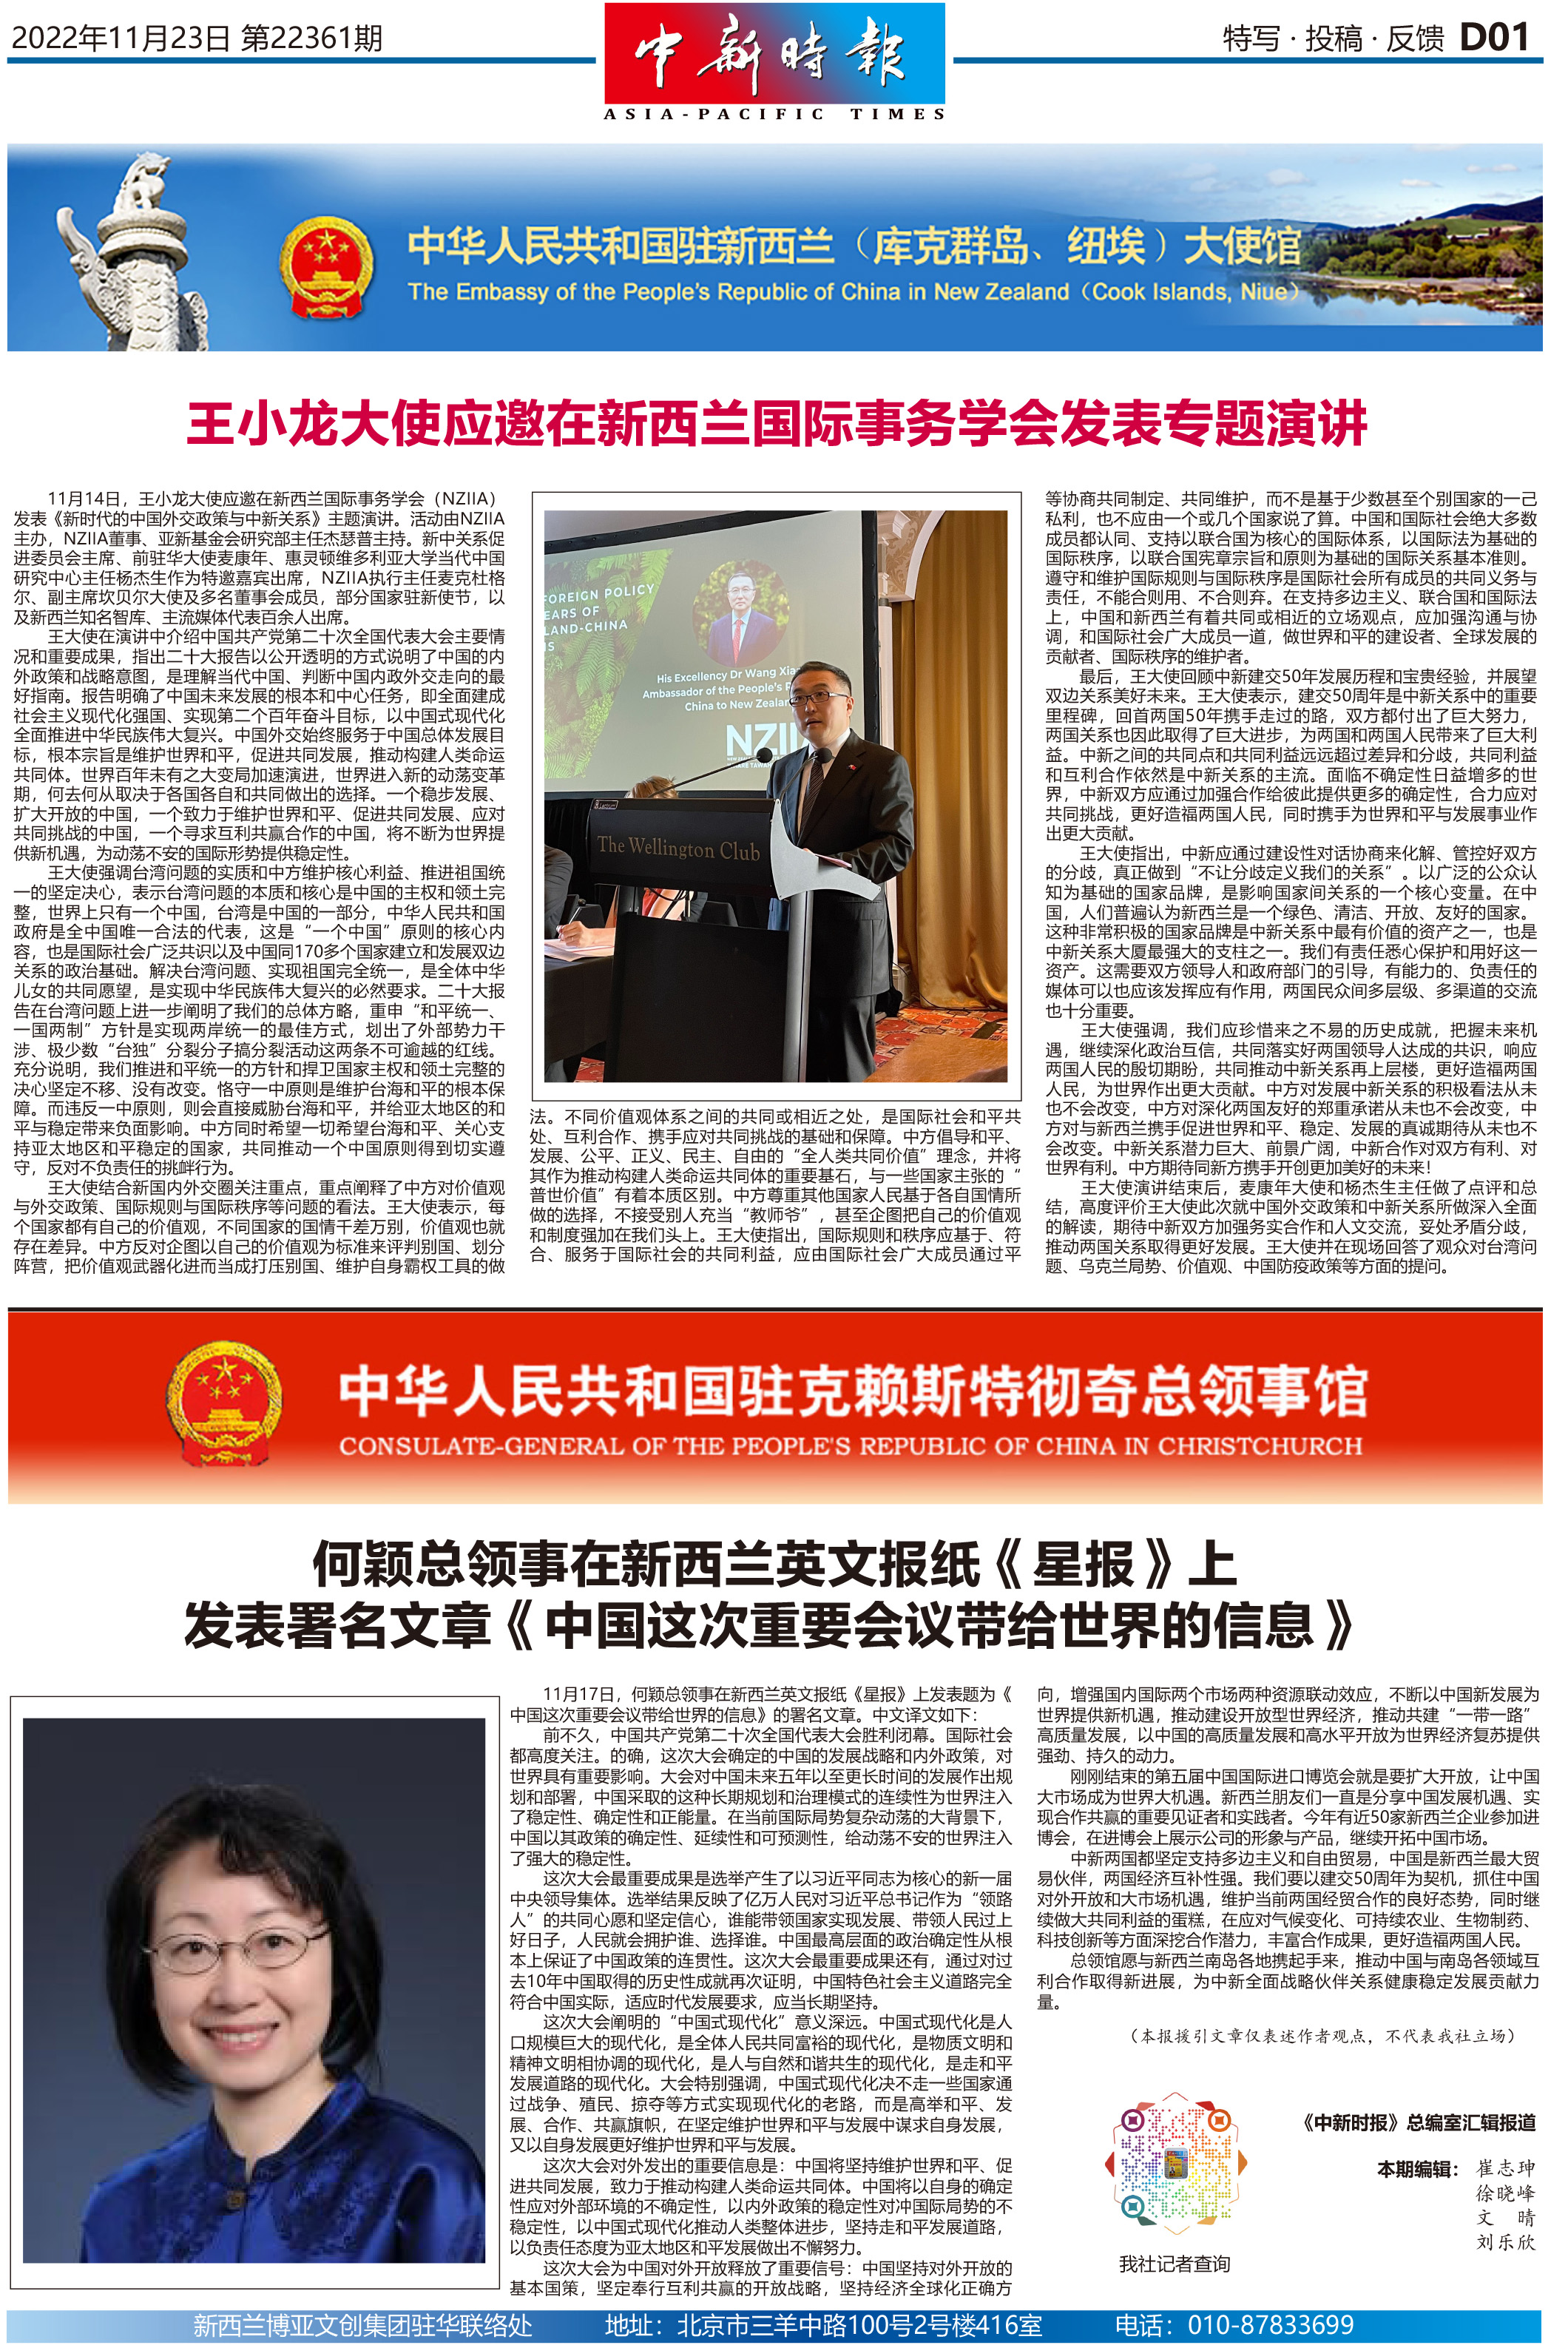 王小龙大使应邀在新西兰国际事务学会发表专题演讲  何颖总领事在新西兰英文报纸《星